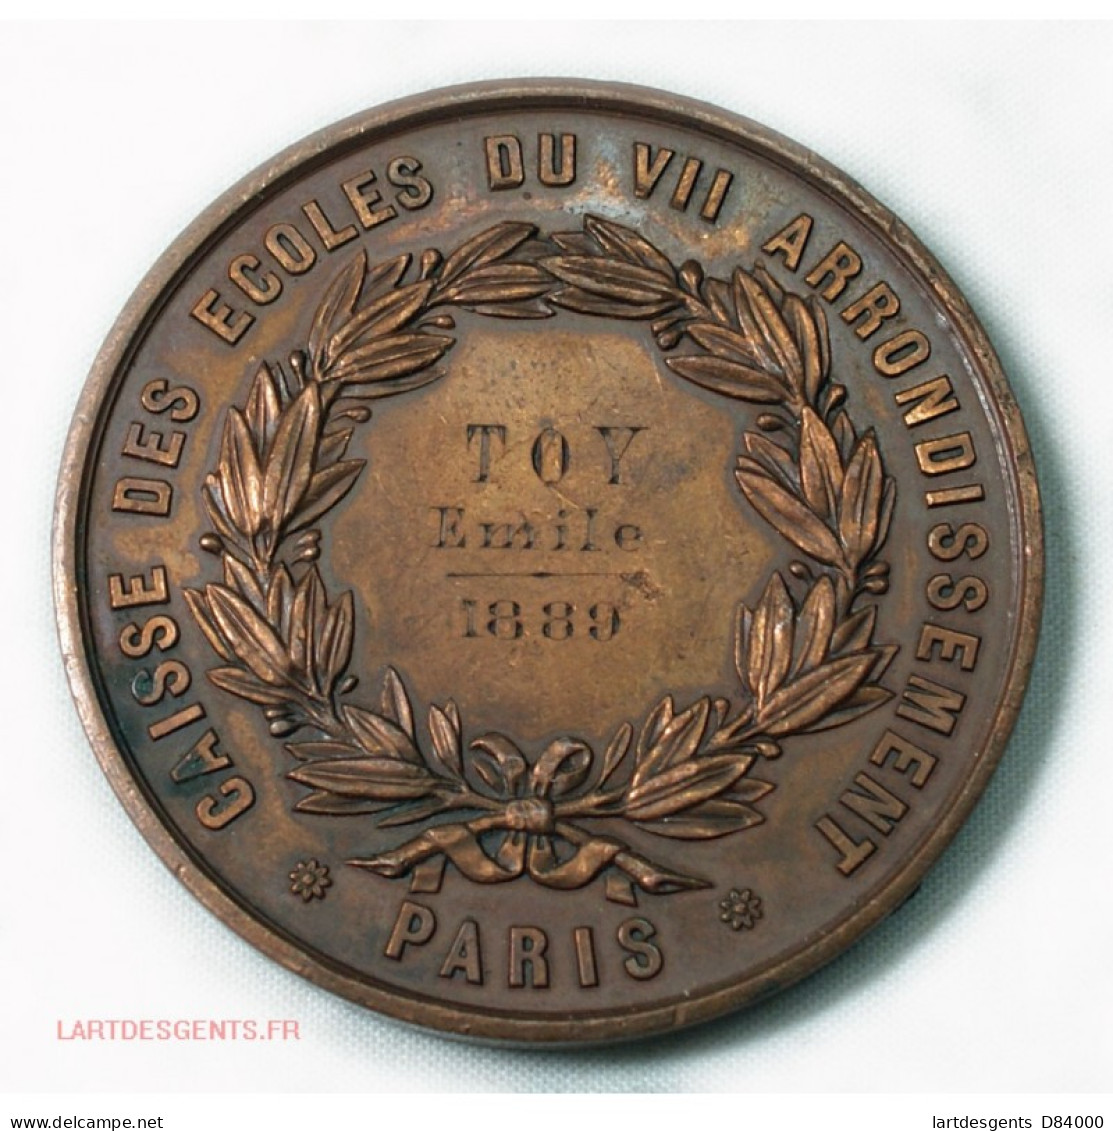 Médaille Caisse Des écoles Du VII Arrondissement Paris 1889 Par BONDELET - Royal / Of Nobility